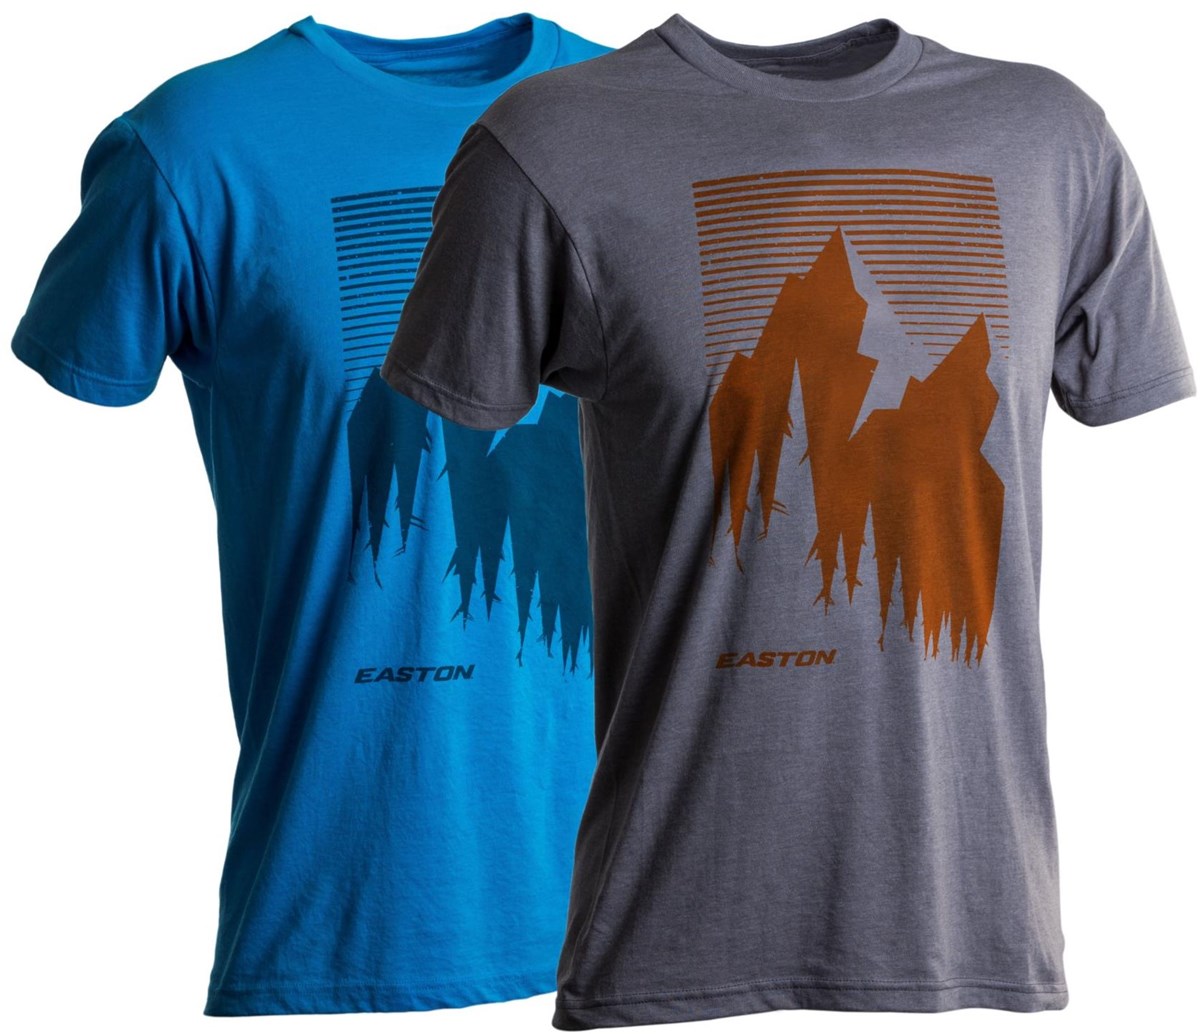 Easton Mountain T-Shirt